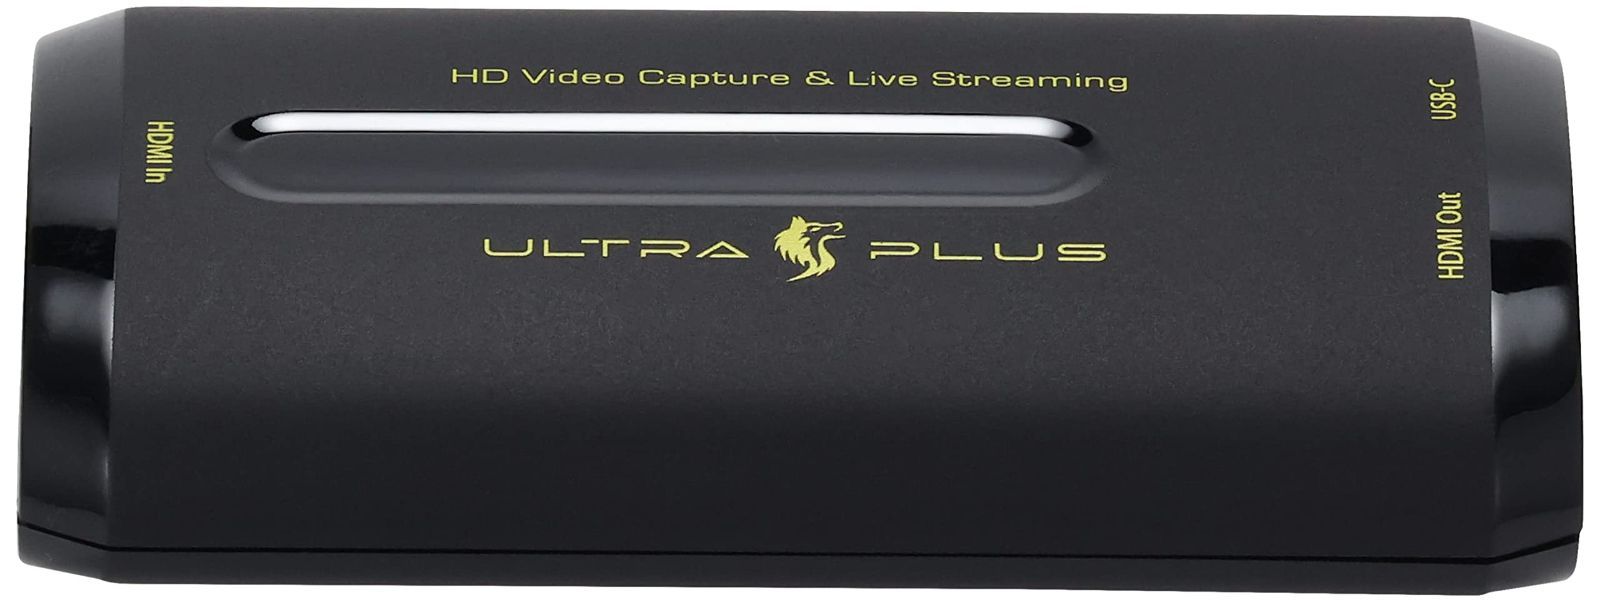 プリンストン ULTRA PLUS HDMIビデオキャプチャーユニット